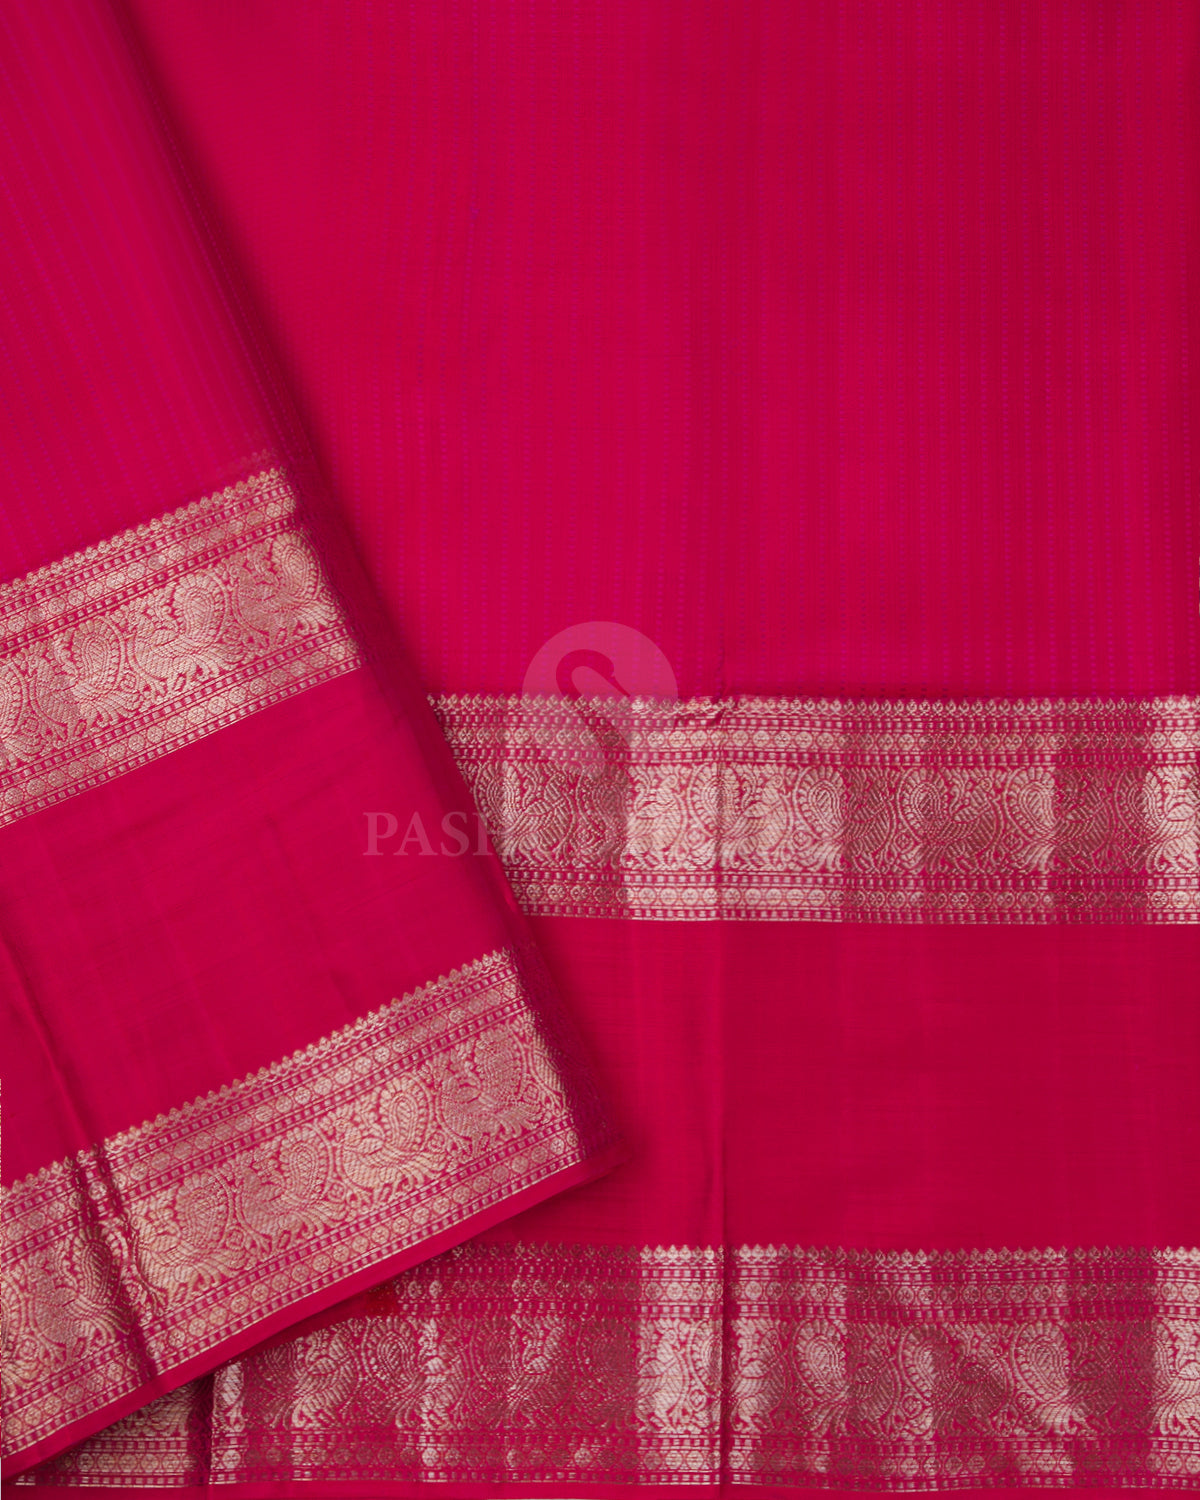 Mulberry and Hot Pink Kanjivaram Silk Saree - D459 - View 2